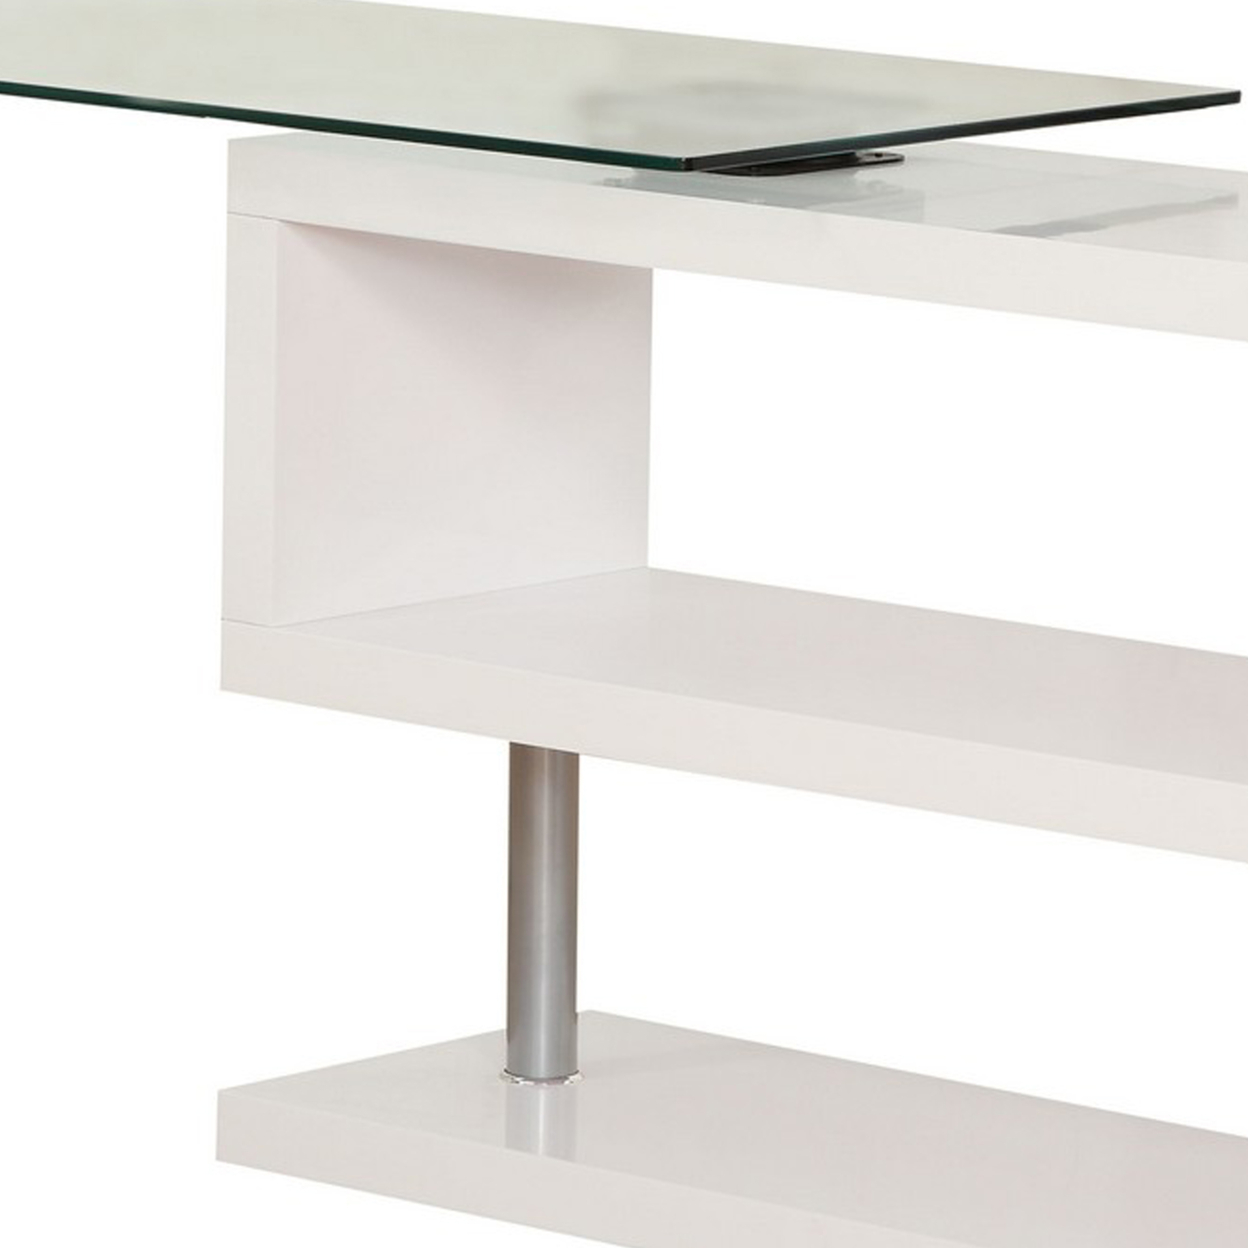 55 Inch Modern Office Desk, Swivel Shelves, Sleek Glass Top, Glossy White- Saltoro Sherpi